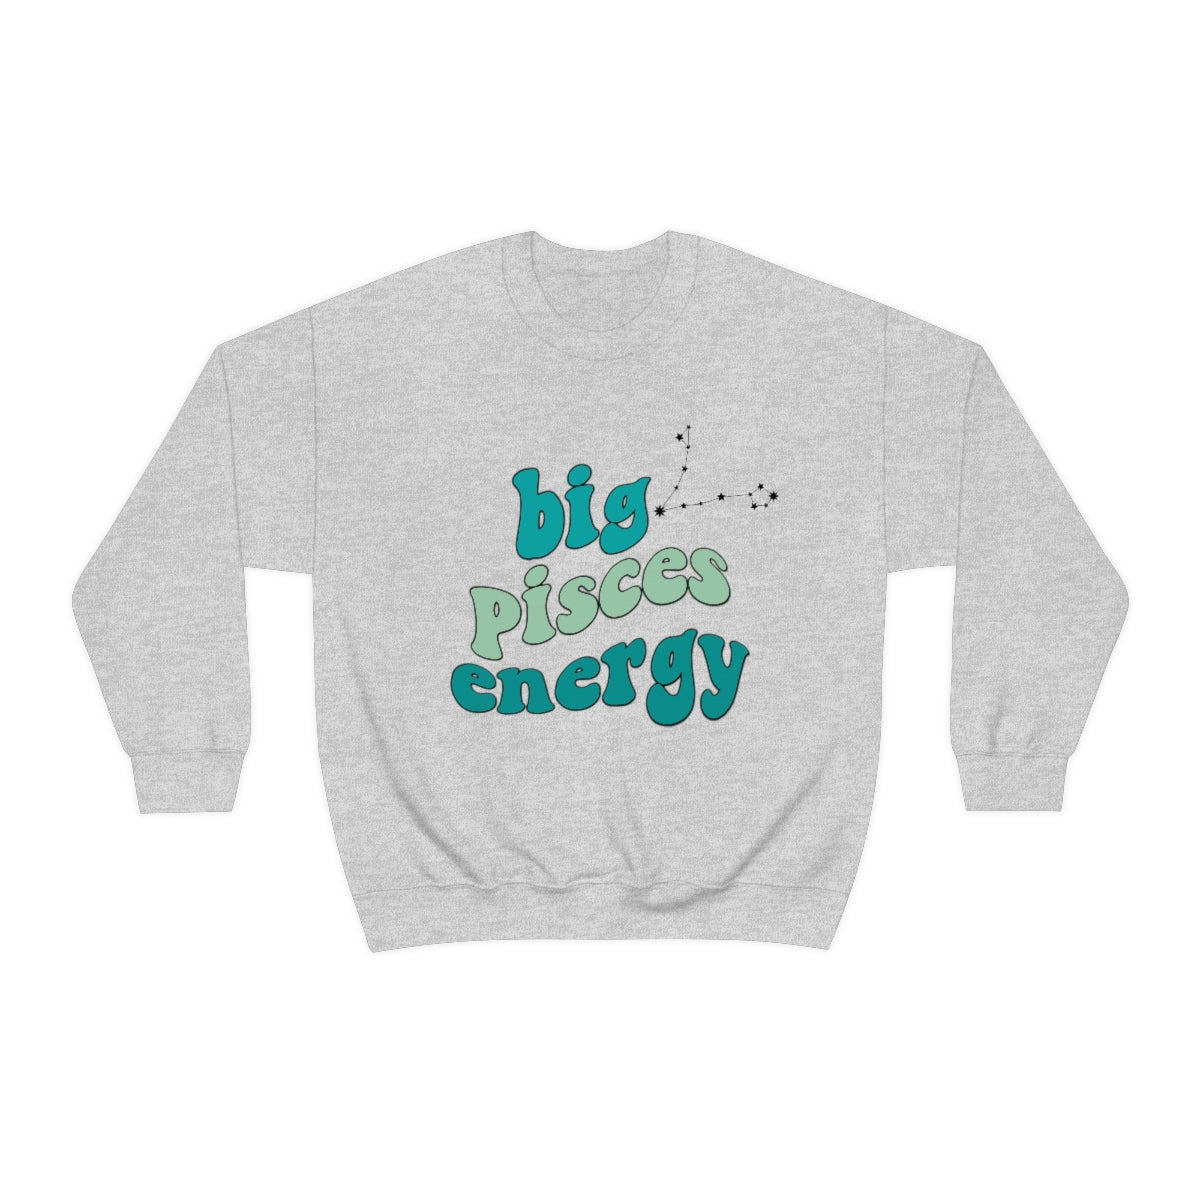 Pisces Sweatshirt, Big Pisces Energy Sweatshirt, Gift for Pisces, Astrology lover sweatshirt, Gift for Astrology Lover, Zodiac sweater